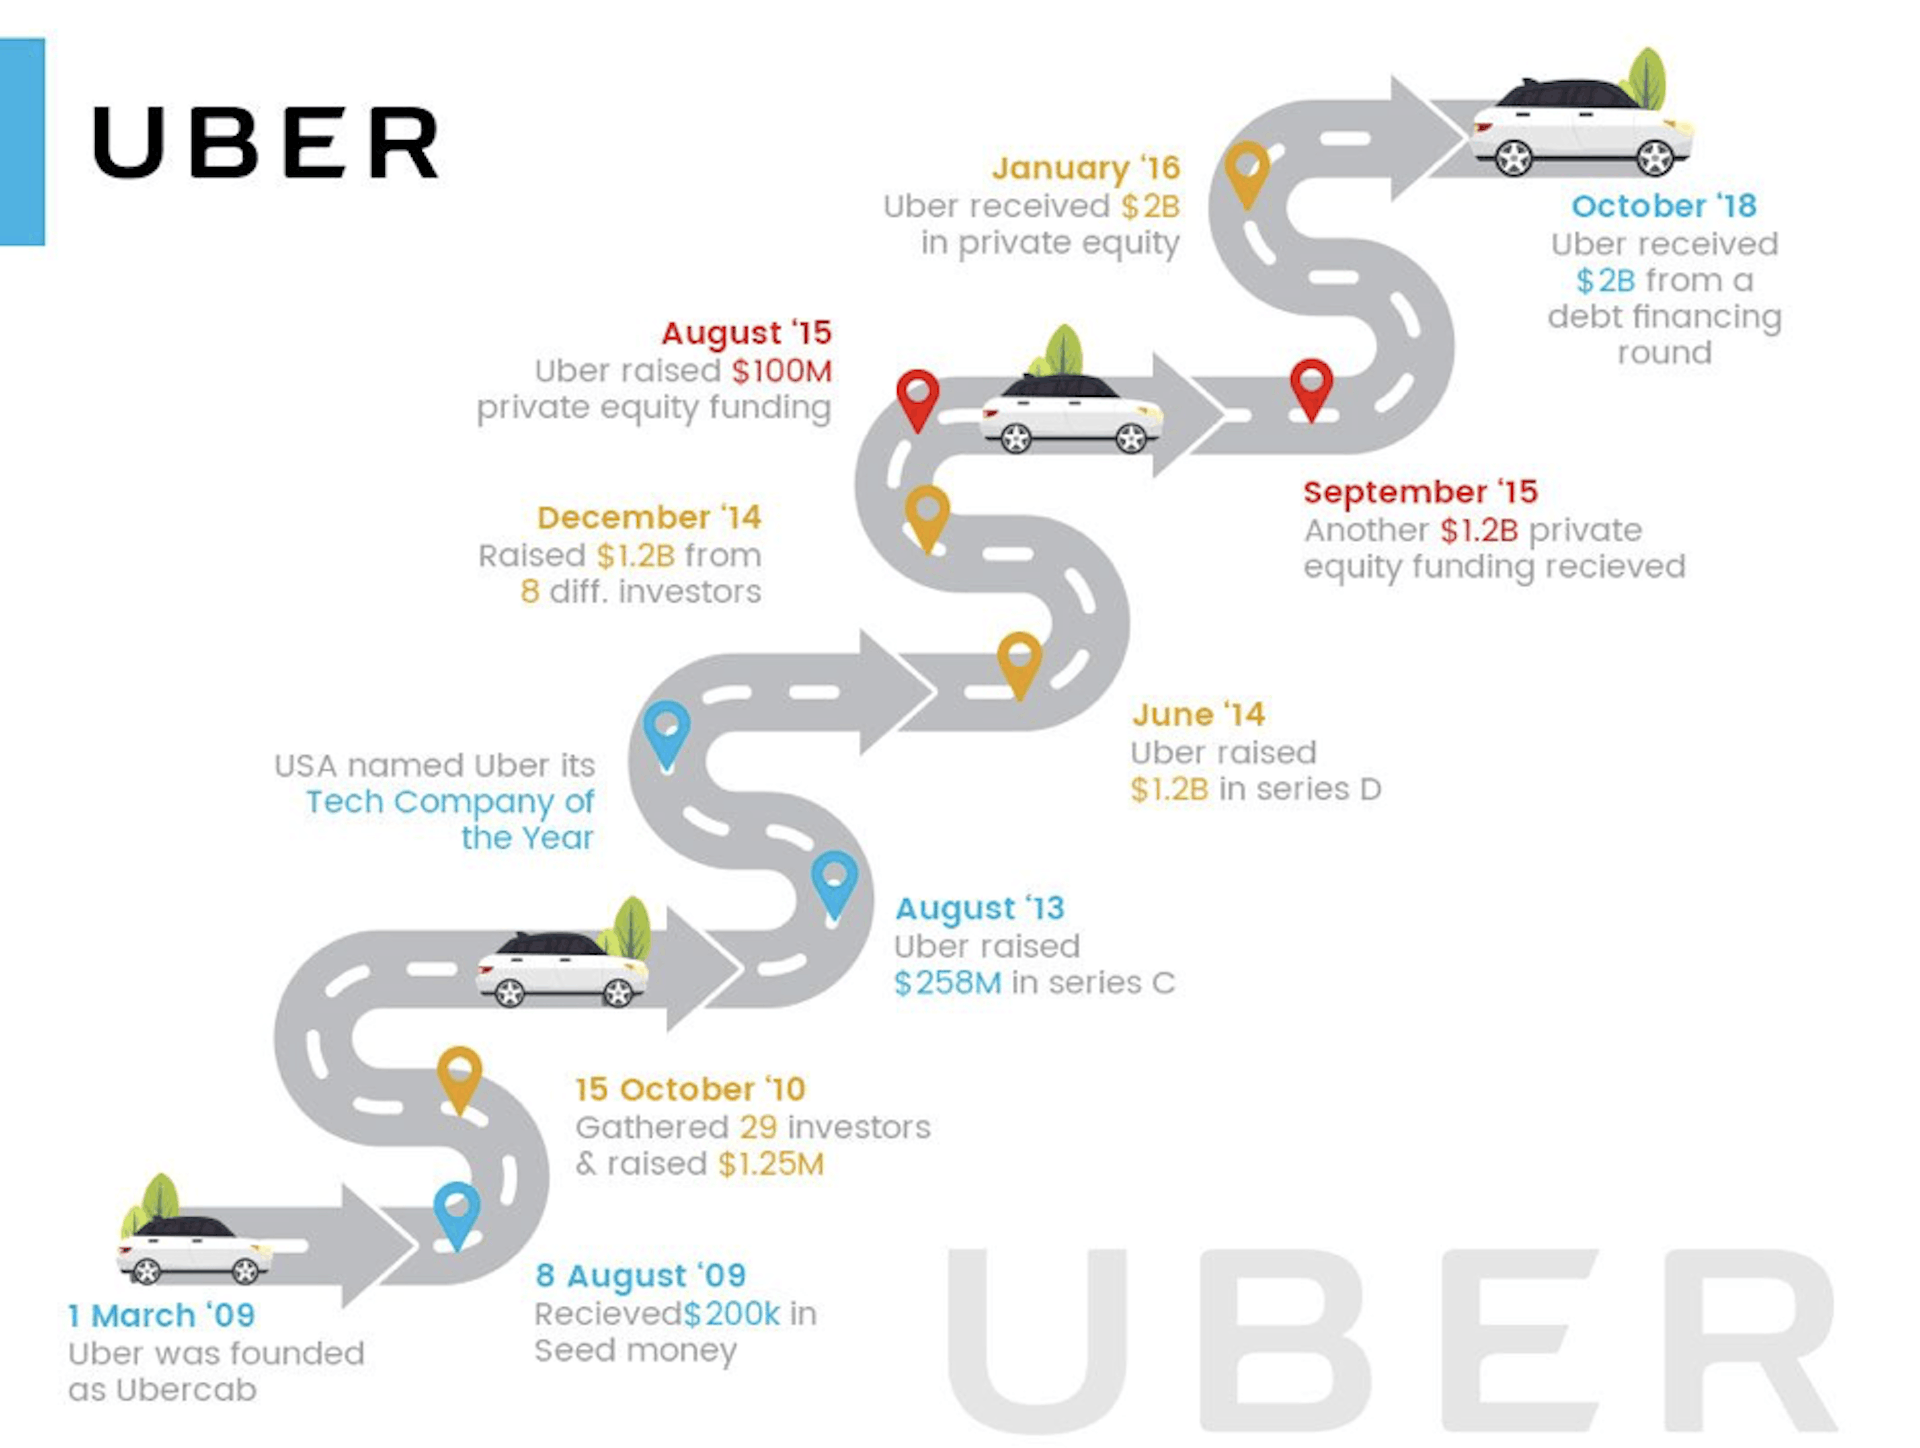 Jornada Uber desde o lançamento